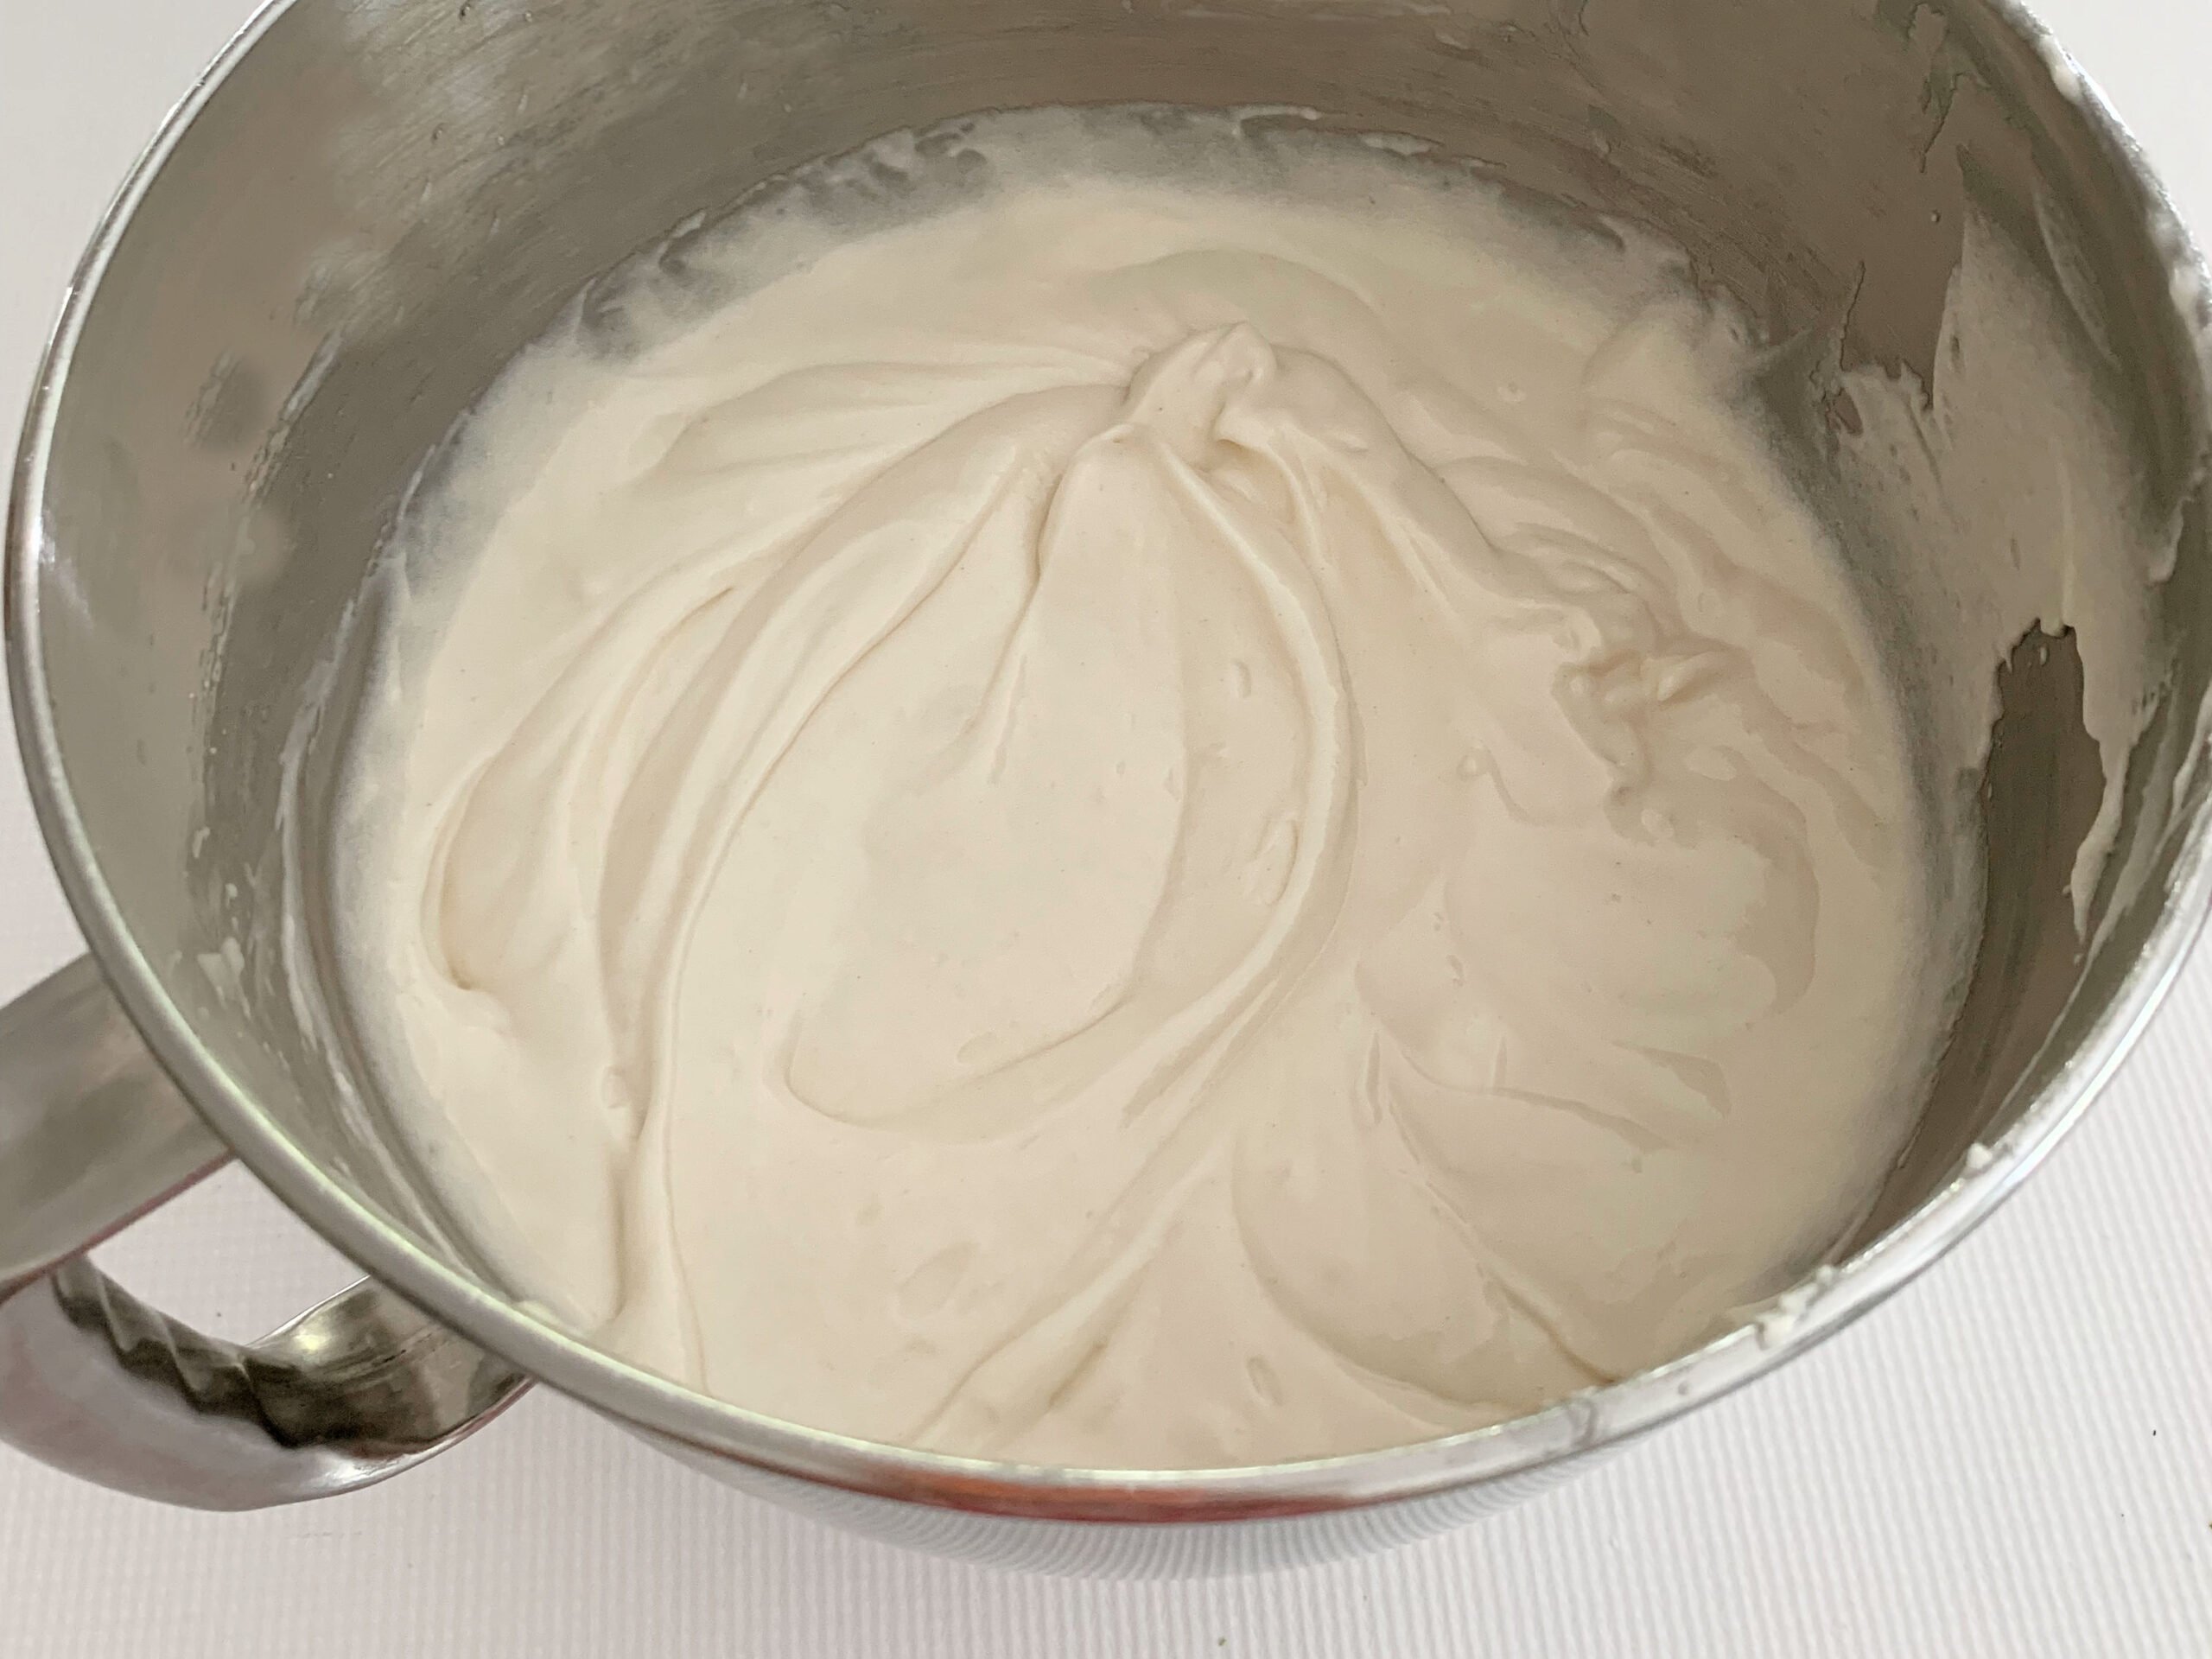 Mixing bowl of white cake batter